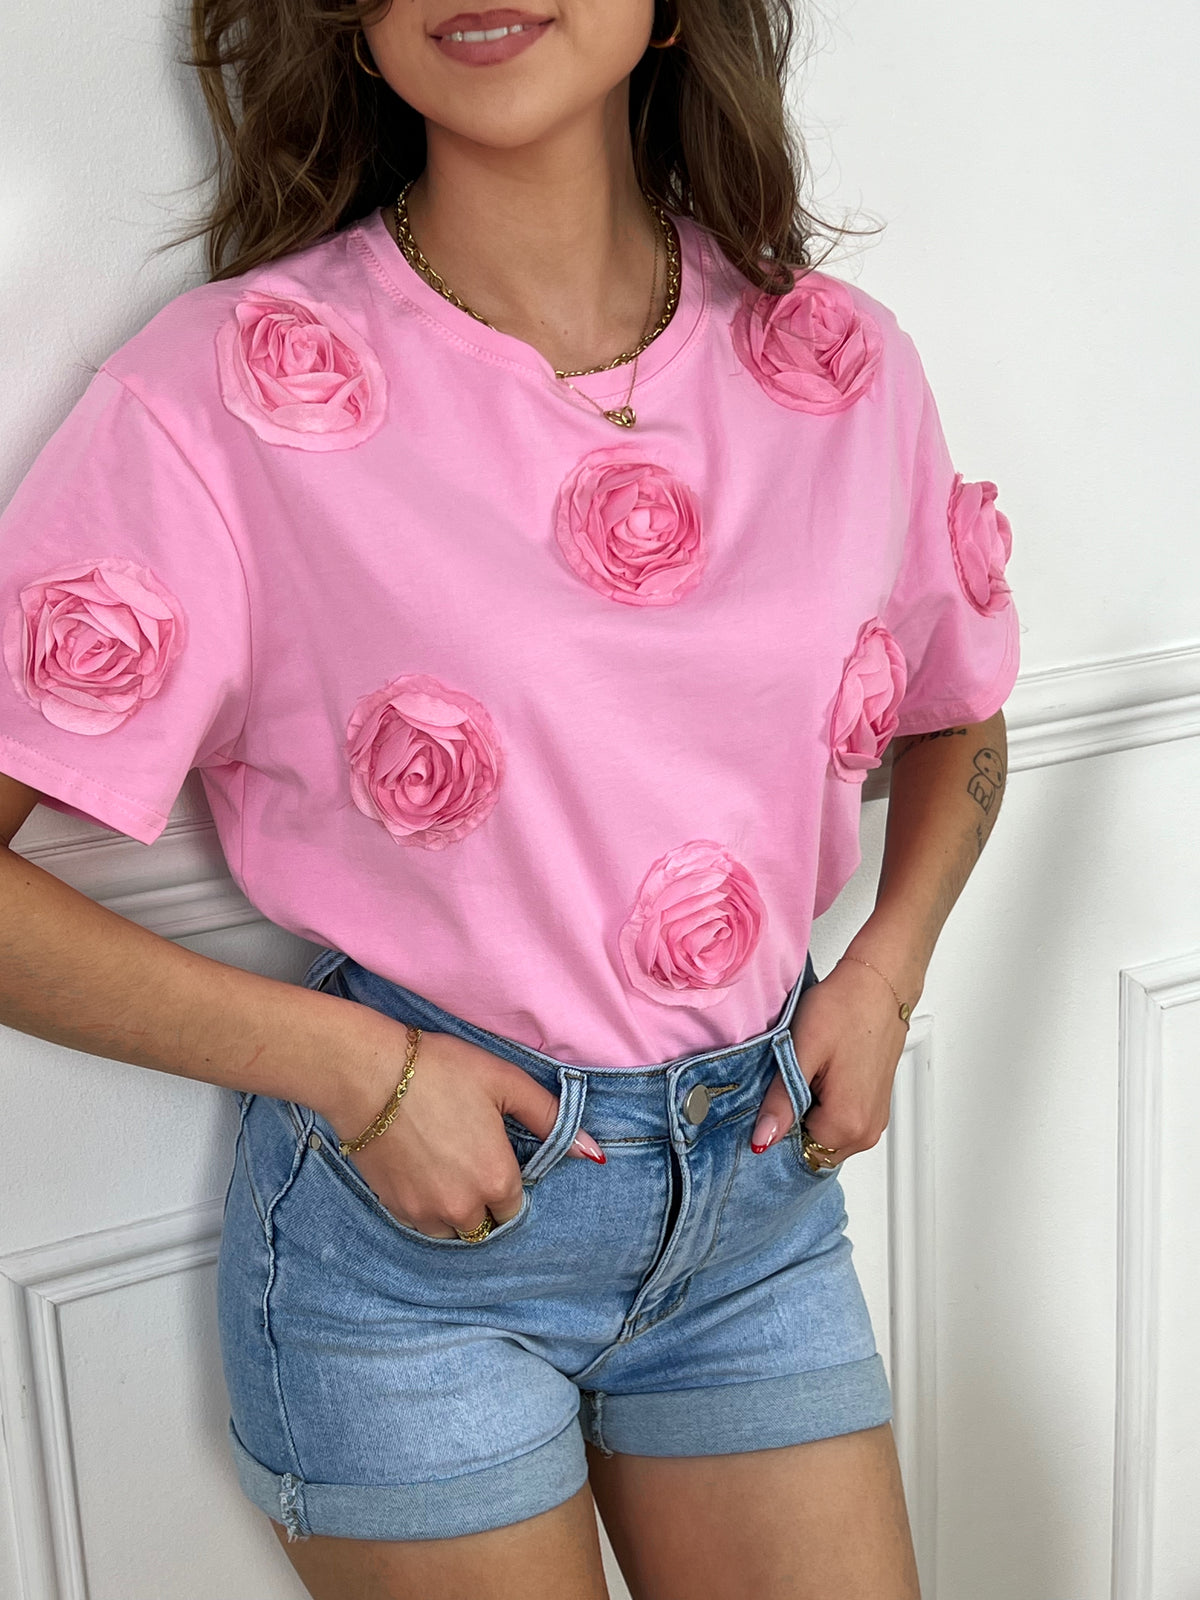 Découvrez notre charmant tee-shirt rose Felicie pour femmes ! Avec ses manches courtes, son col rond et ses fleurs en relief sur le devant, il vous offrira un look à la fois féminin et élégant. Ajoutez une touche de couleur à votre tenue avec notre tee-shirt confortable et tendance.